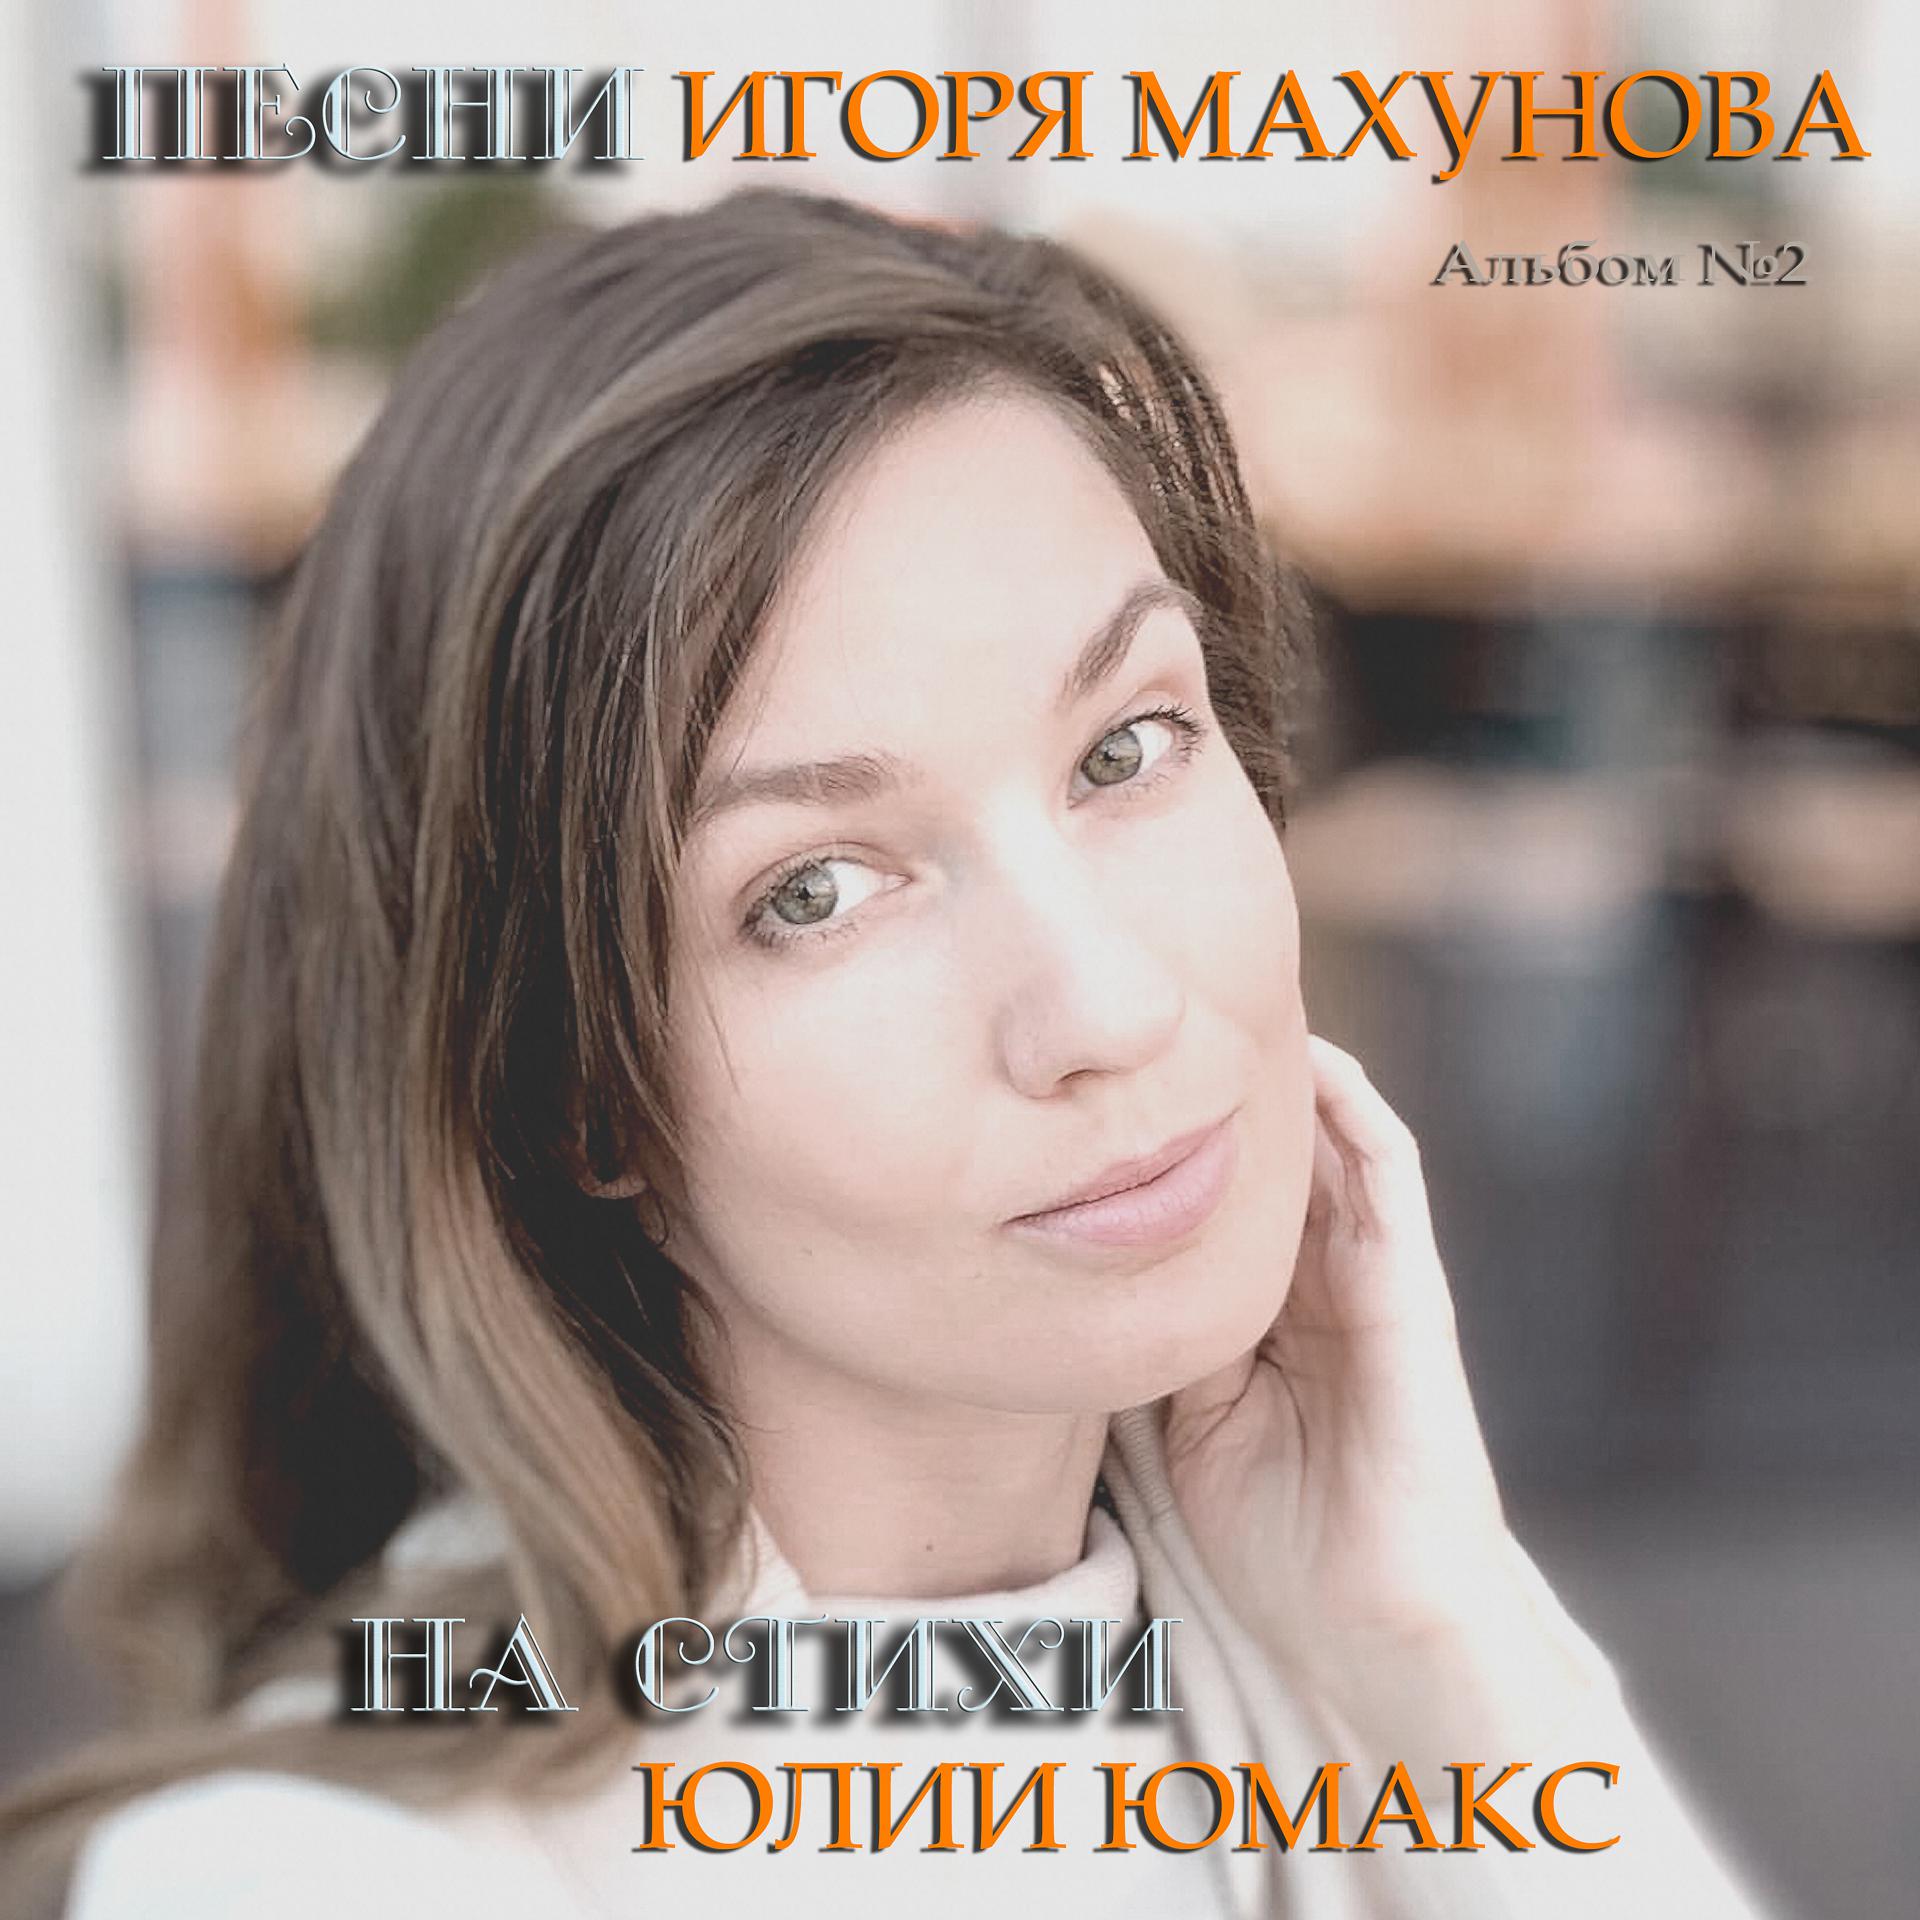 Постер альбома Песни Игоря Махунова на стихи Юлии Юмакс.Альбом № 2